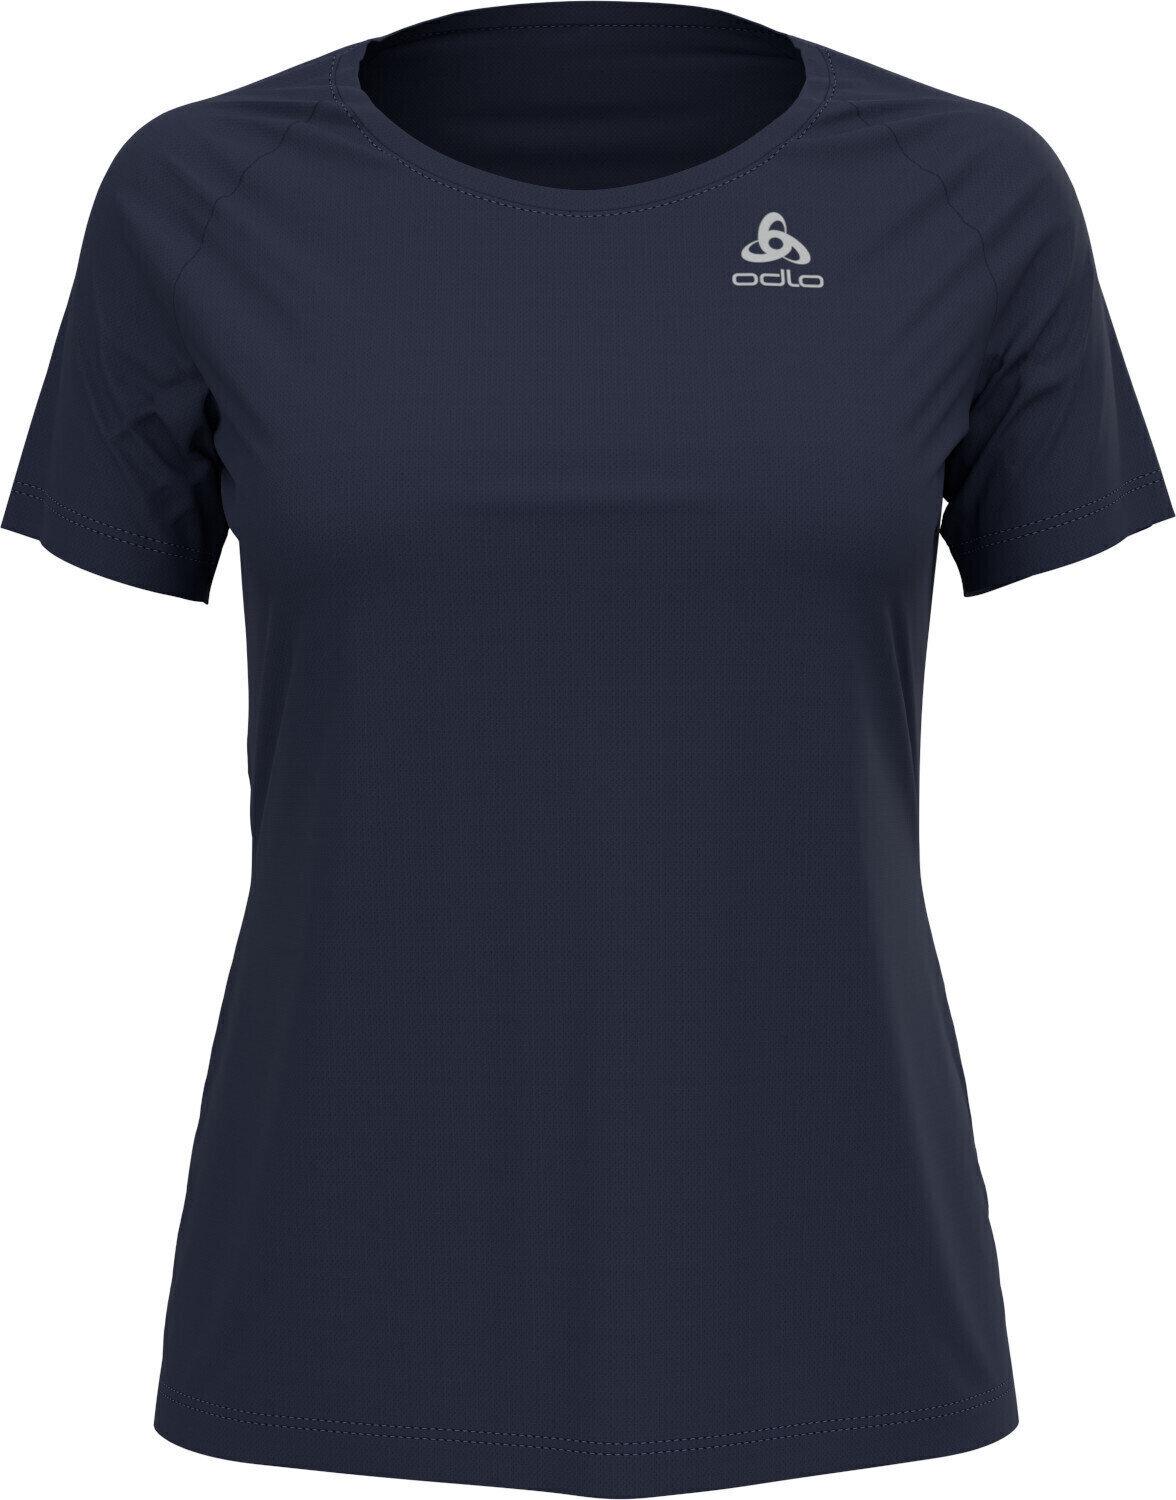 Bežecké tričko s krátkym rukávom
 Odlo Element Light T-Shirt Diving Navy XS Bežecké tričko s krátkym rukávom